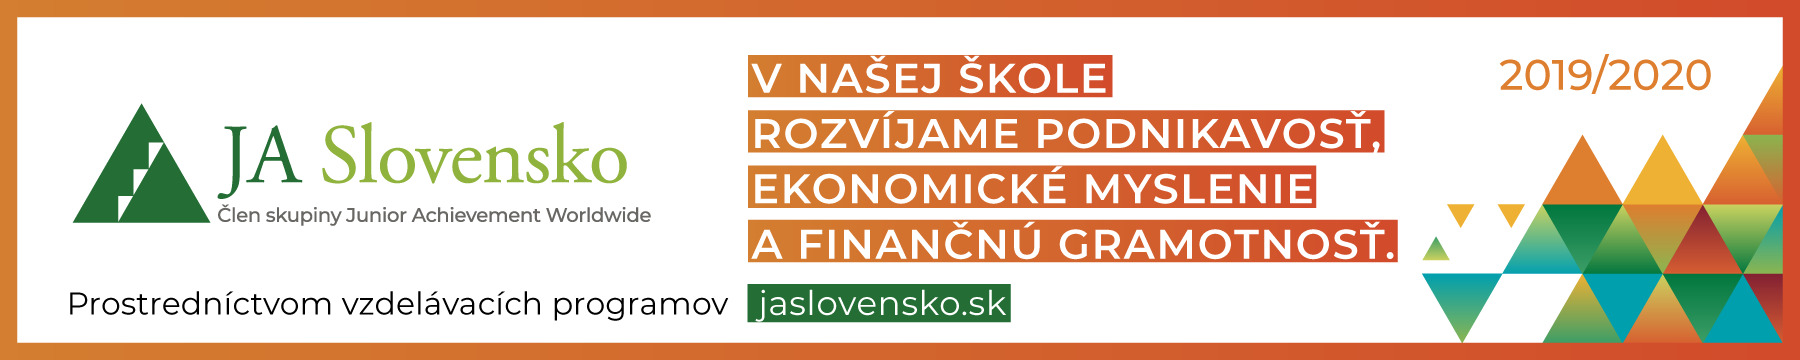 Úspešní absolventi vzdelávacieho programu JA Slovensko ONLINE EKONÓMIA - Obrázok 1